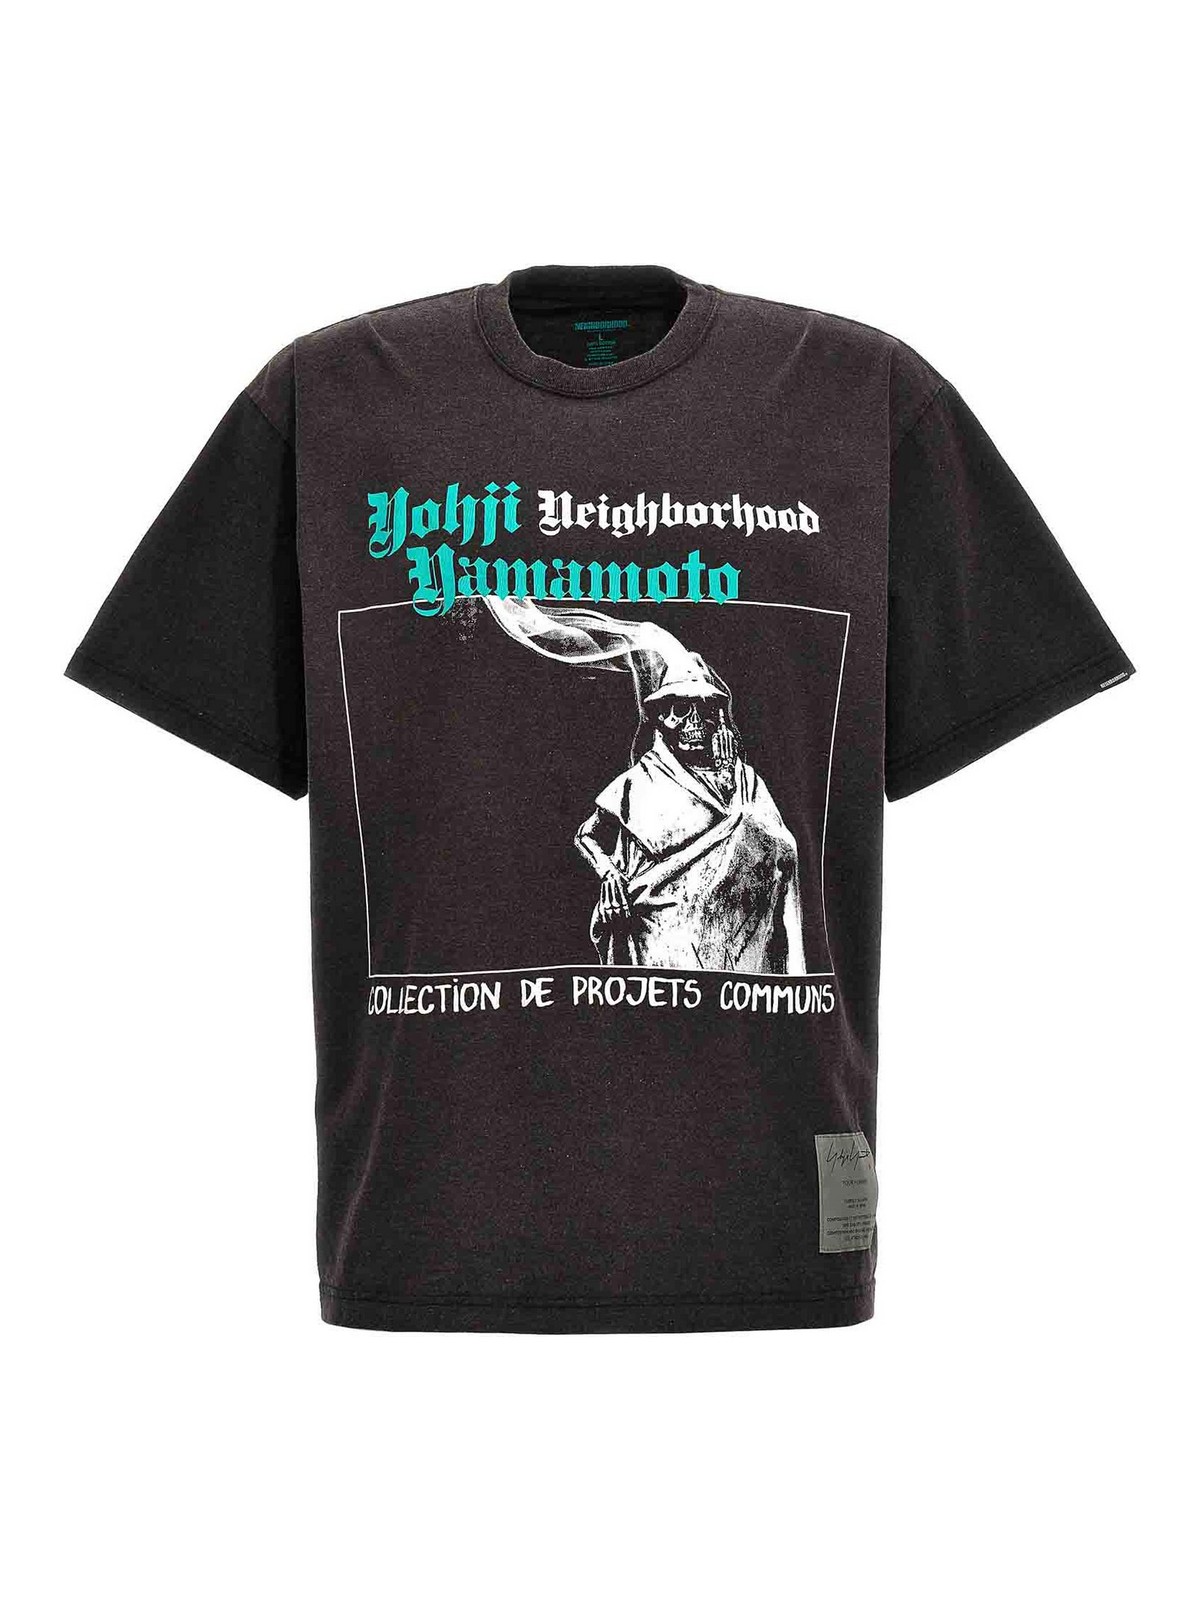 Yohji Yamamoto Neighborhood T-shirt In Grey